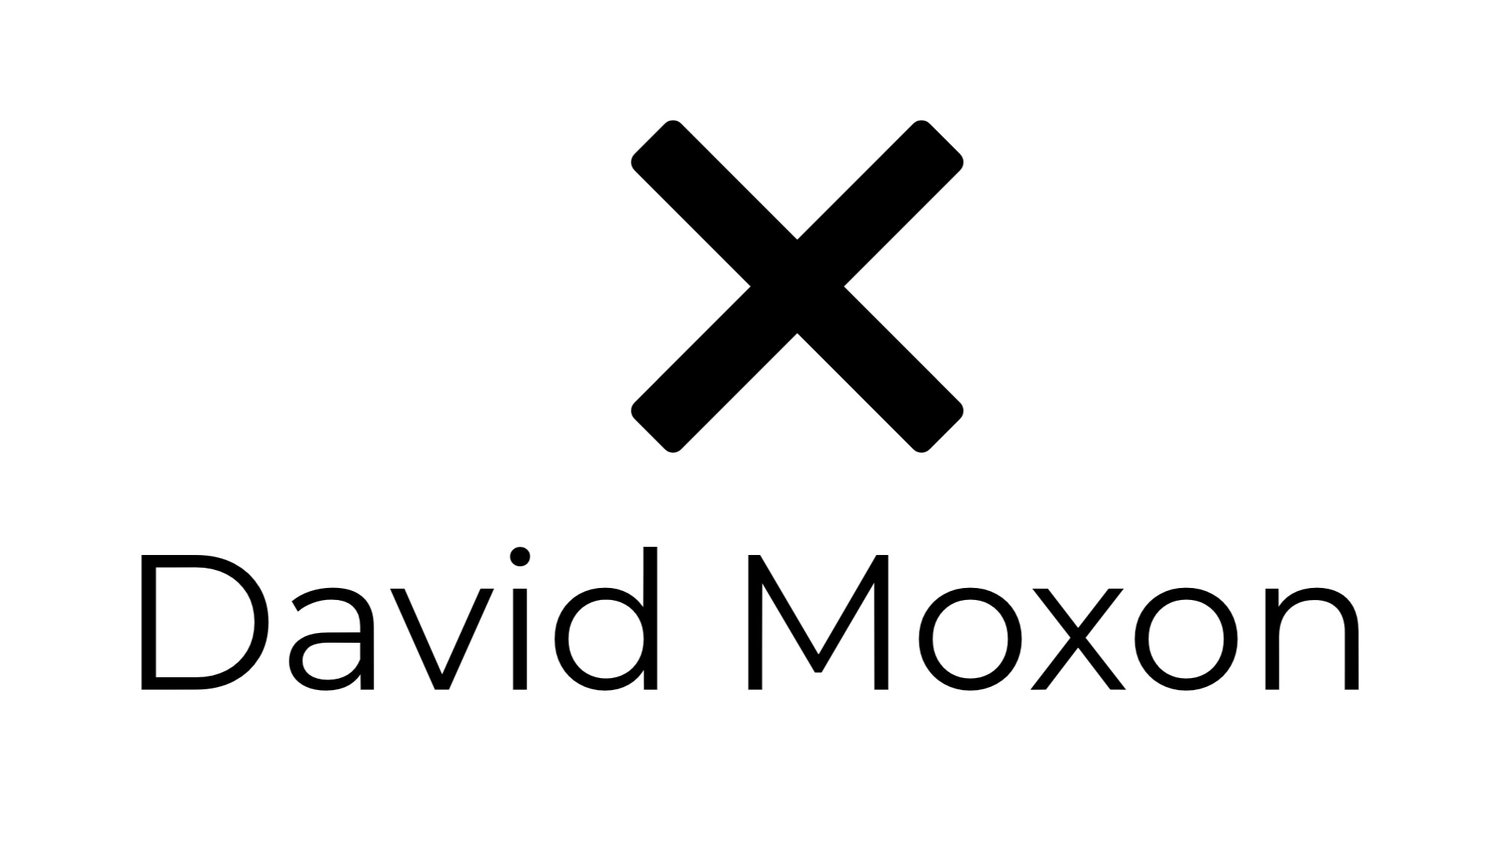 DAVID MOXON